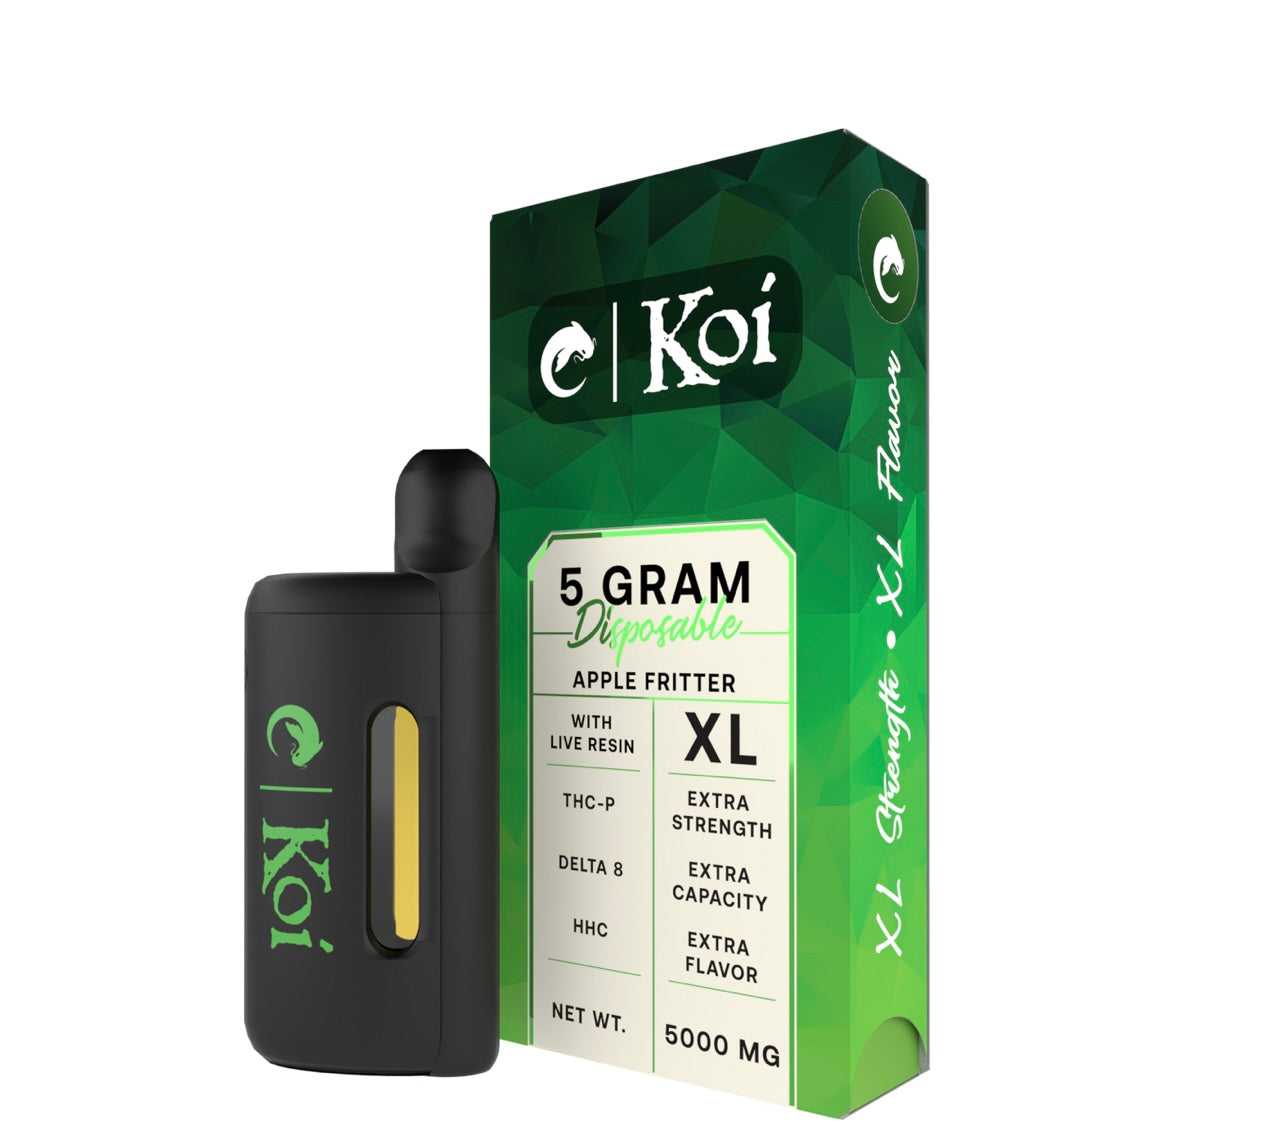 Koi THC-P + HHC + Delta 8 5g Live Resin Disposable Vapes